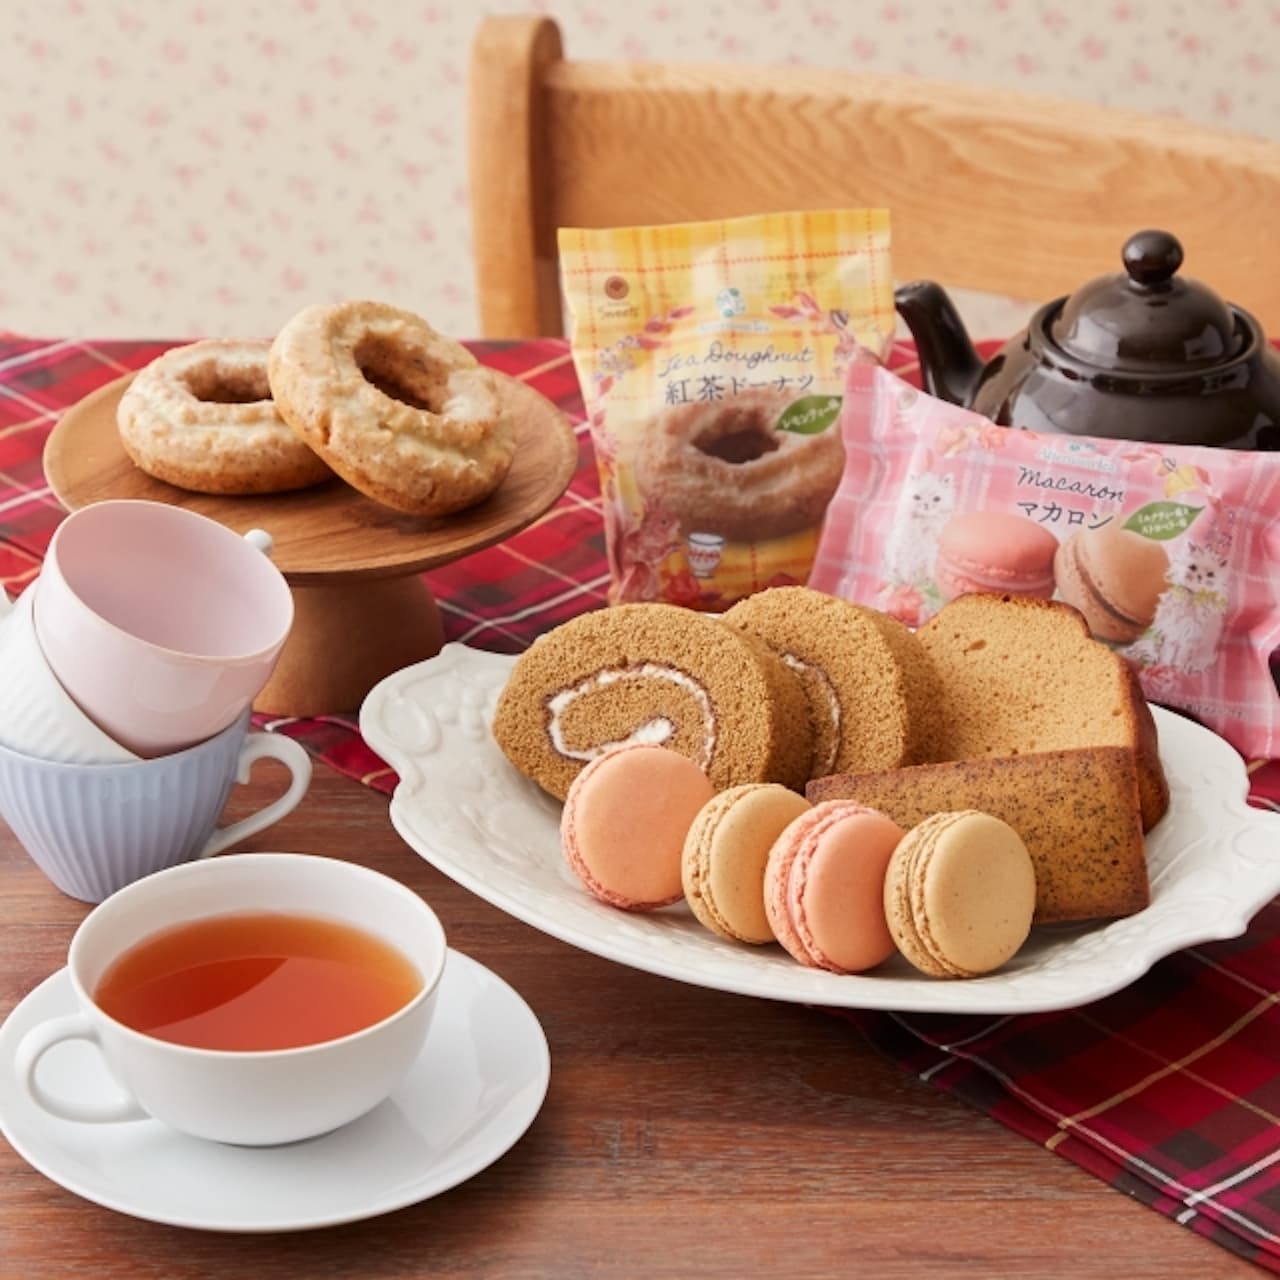 ファミマ Afternoon Tea監修 チルド飲料や焼き菓子